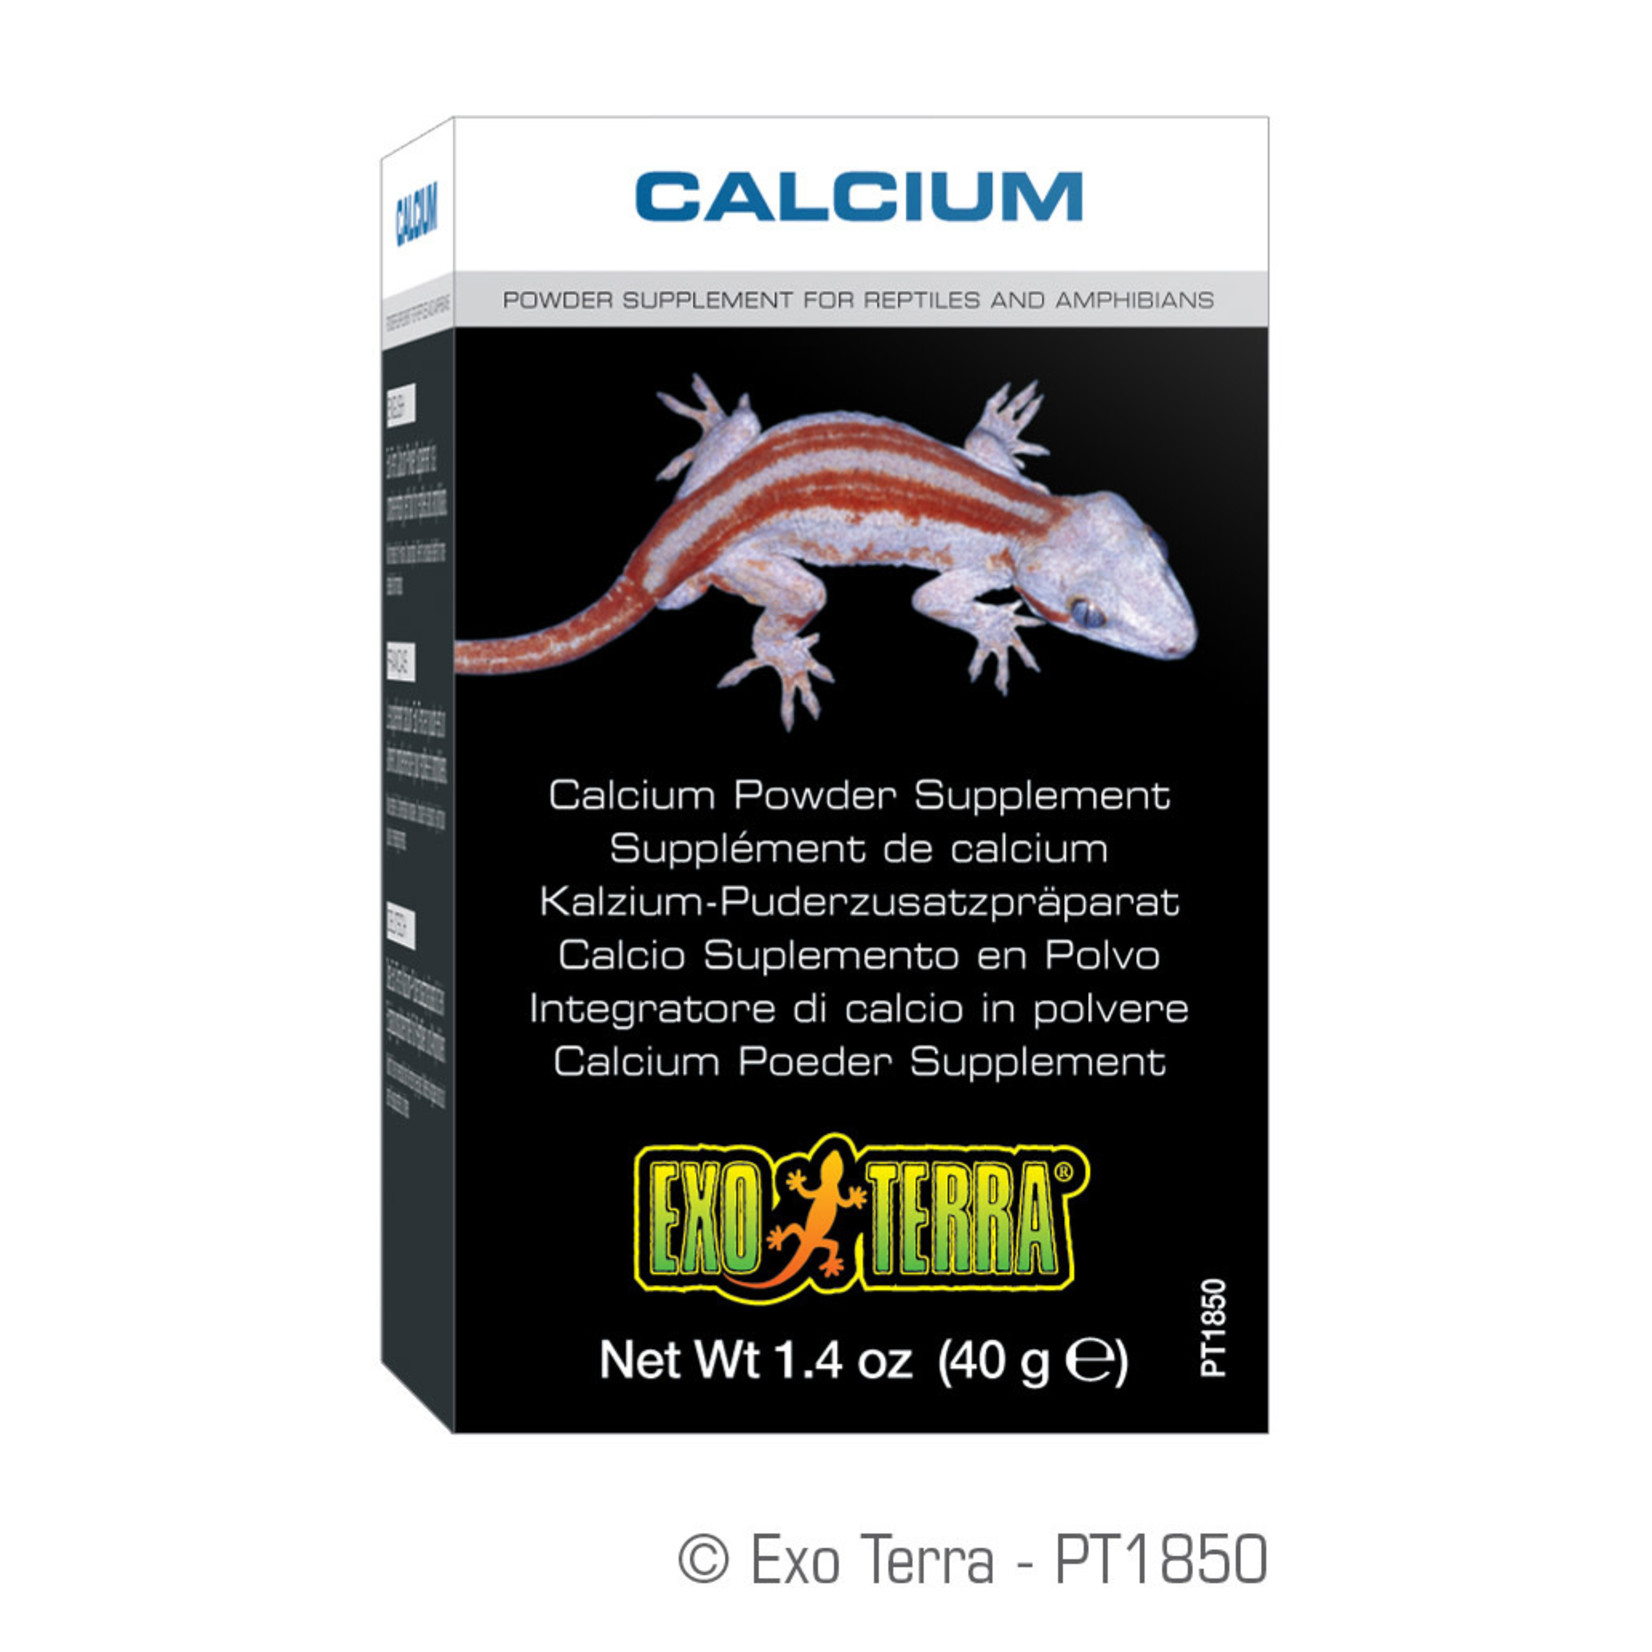 EXO TERRA (W) Exo Terra Calcium Powder Supplement - 1.4 oz / 40 g